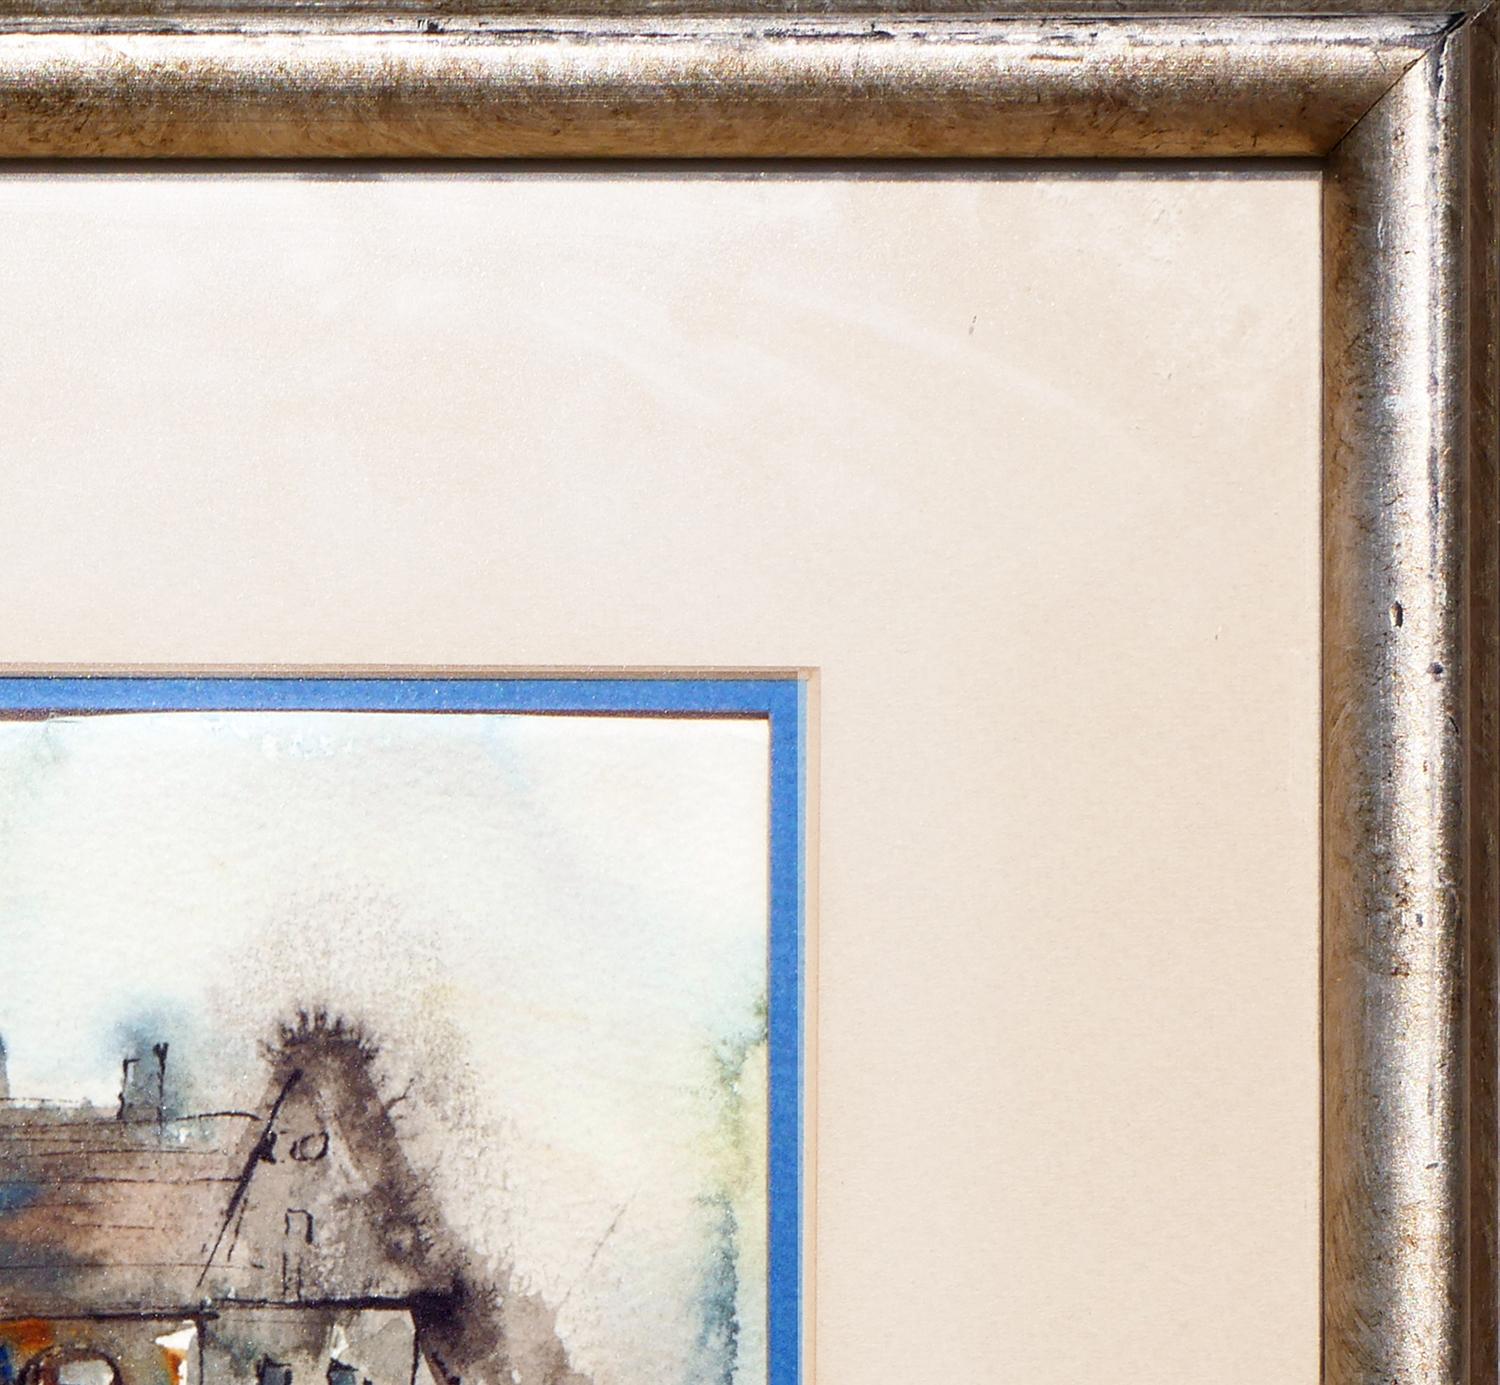 Moderne abstrakte Aquarellzeichnung eines Hauses von der texanischen Künstlerin Bertha Davis. Das Werk zeigt eine locker gezeichnete, neutral getönte Darstellung eines geräumigen Hauses mit blauen Akzenten. Signiert und datiert vom Künstler in der